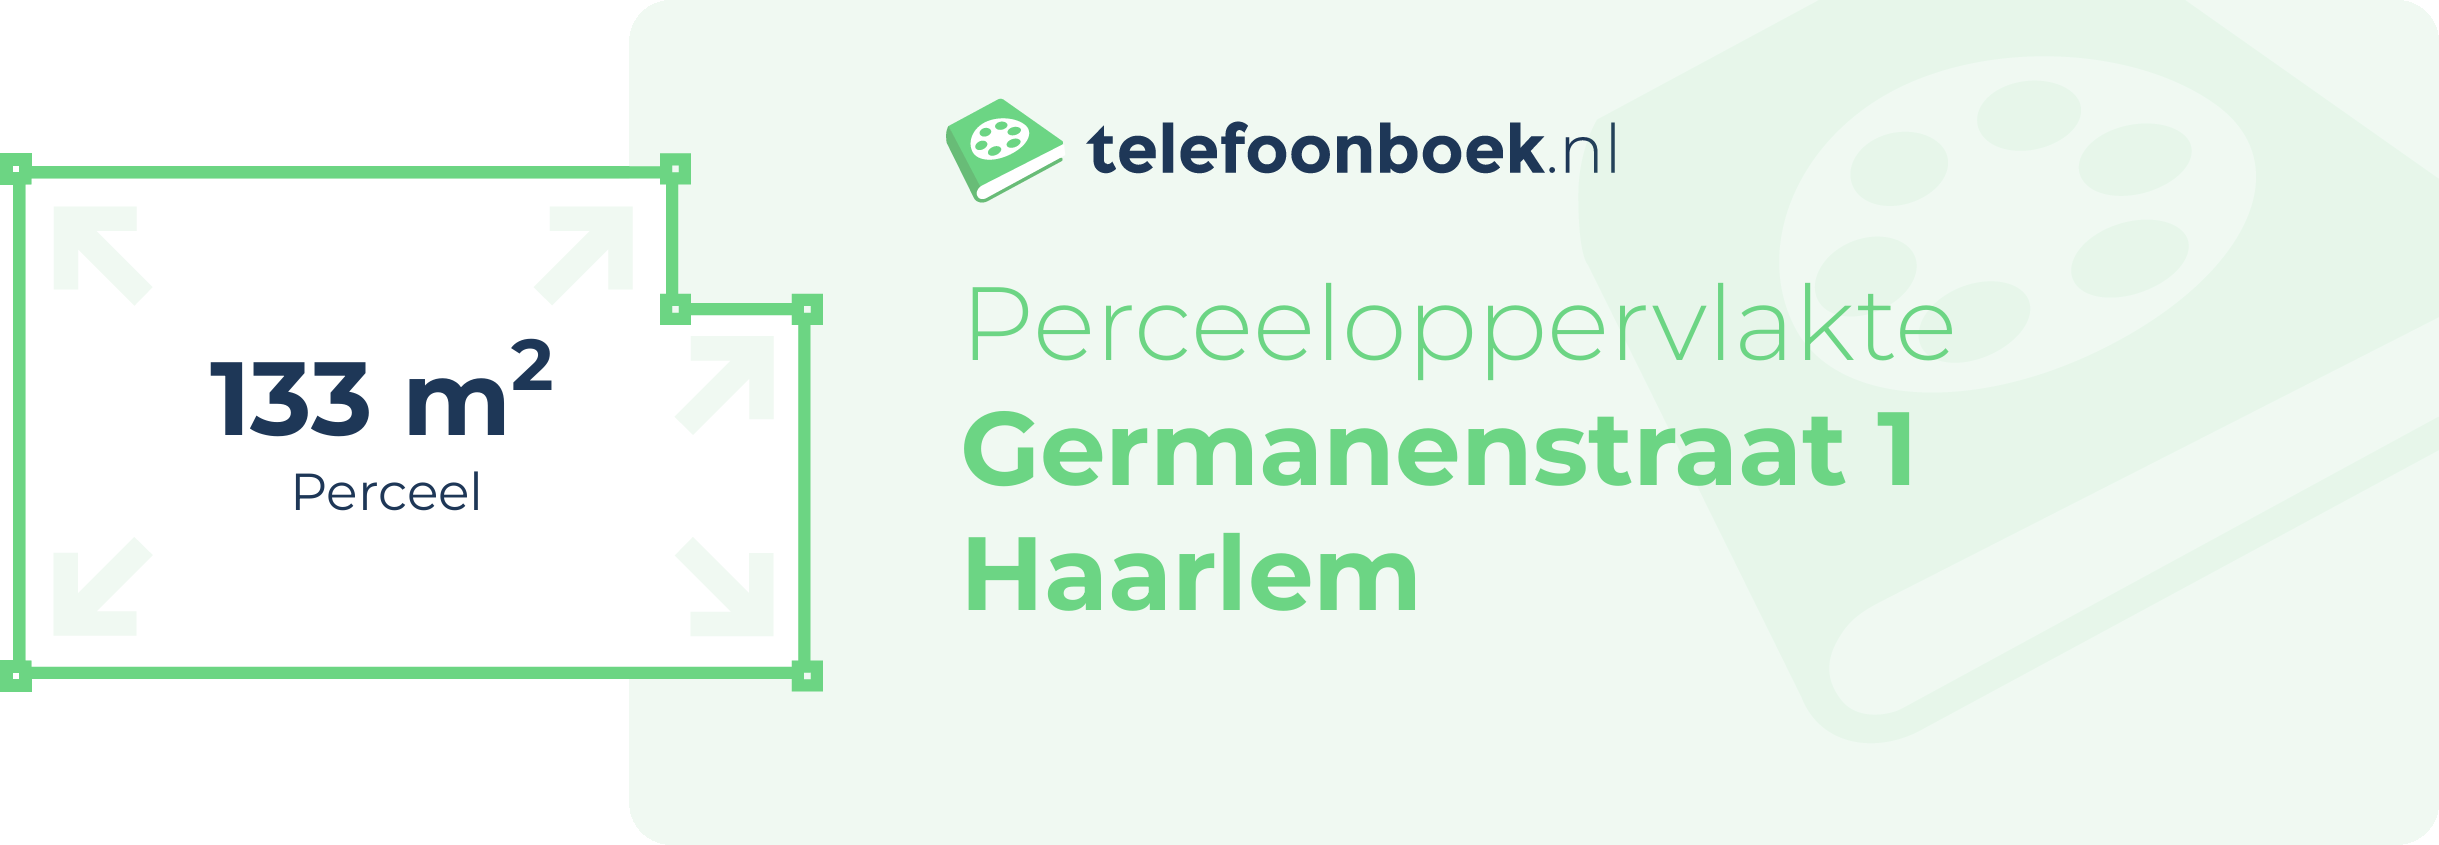 Perceeloppervlakte Germanenstraat 1 Haarlem